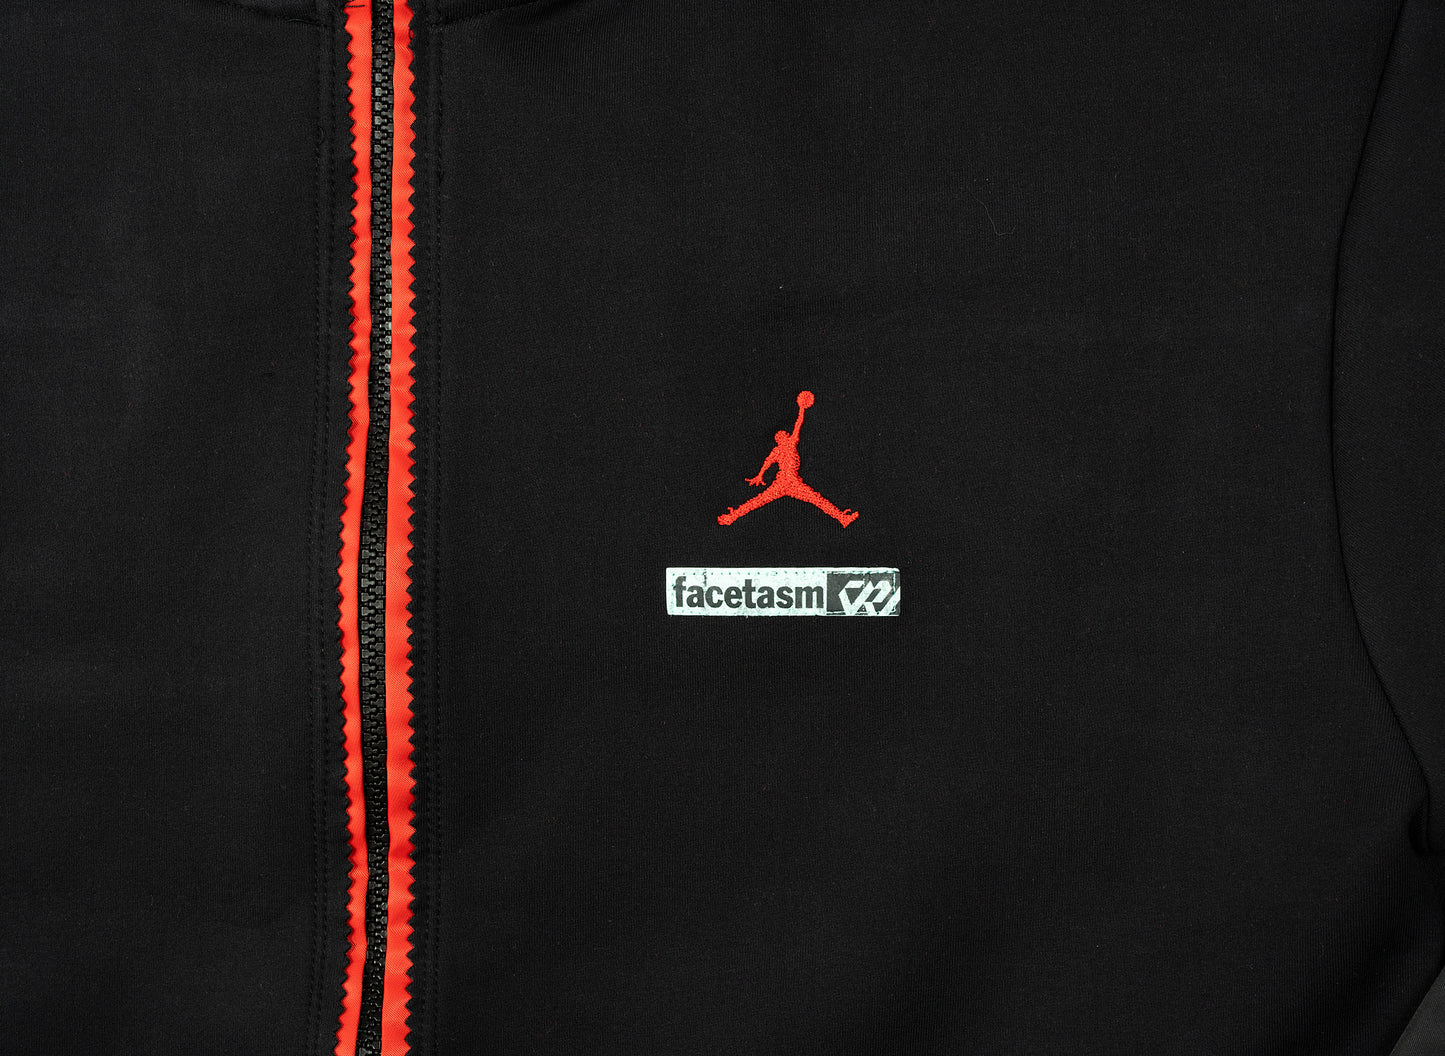 Jordan Why Not? x Facetasm Jacket in Black